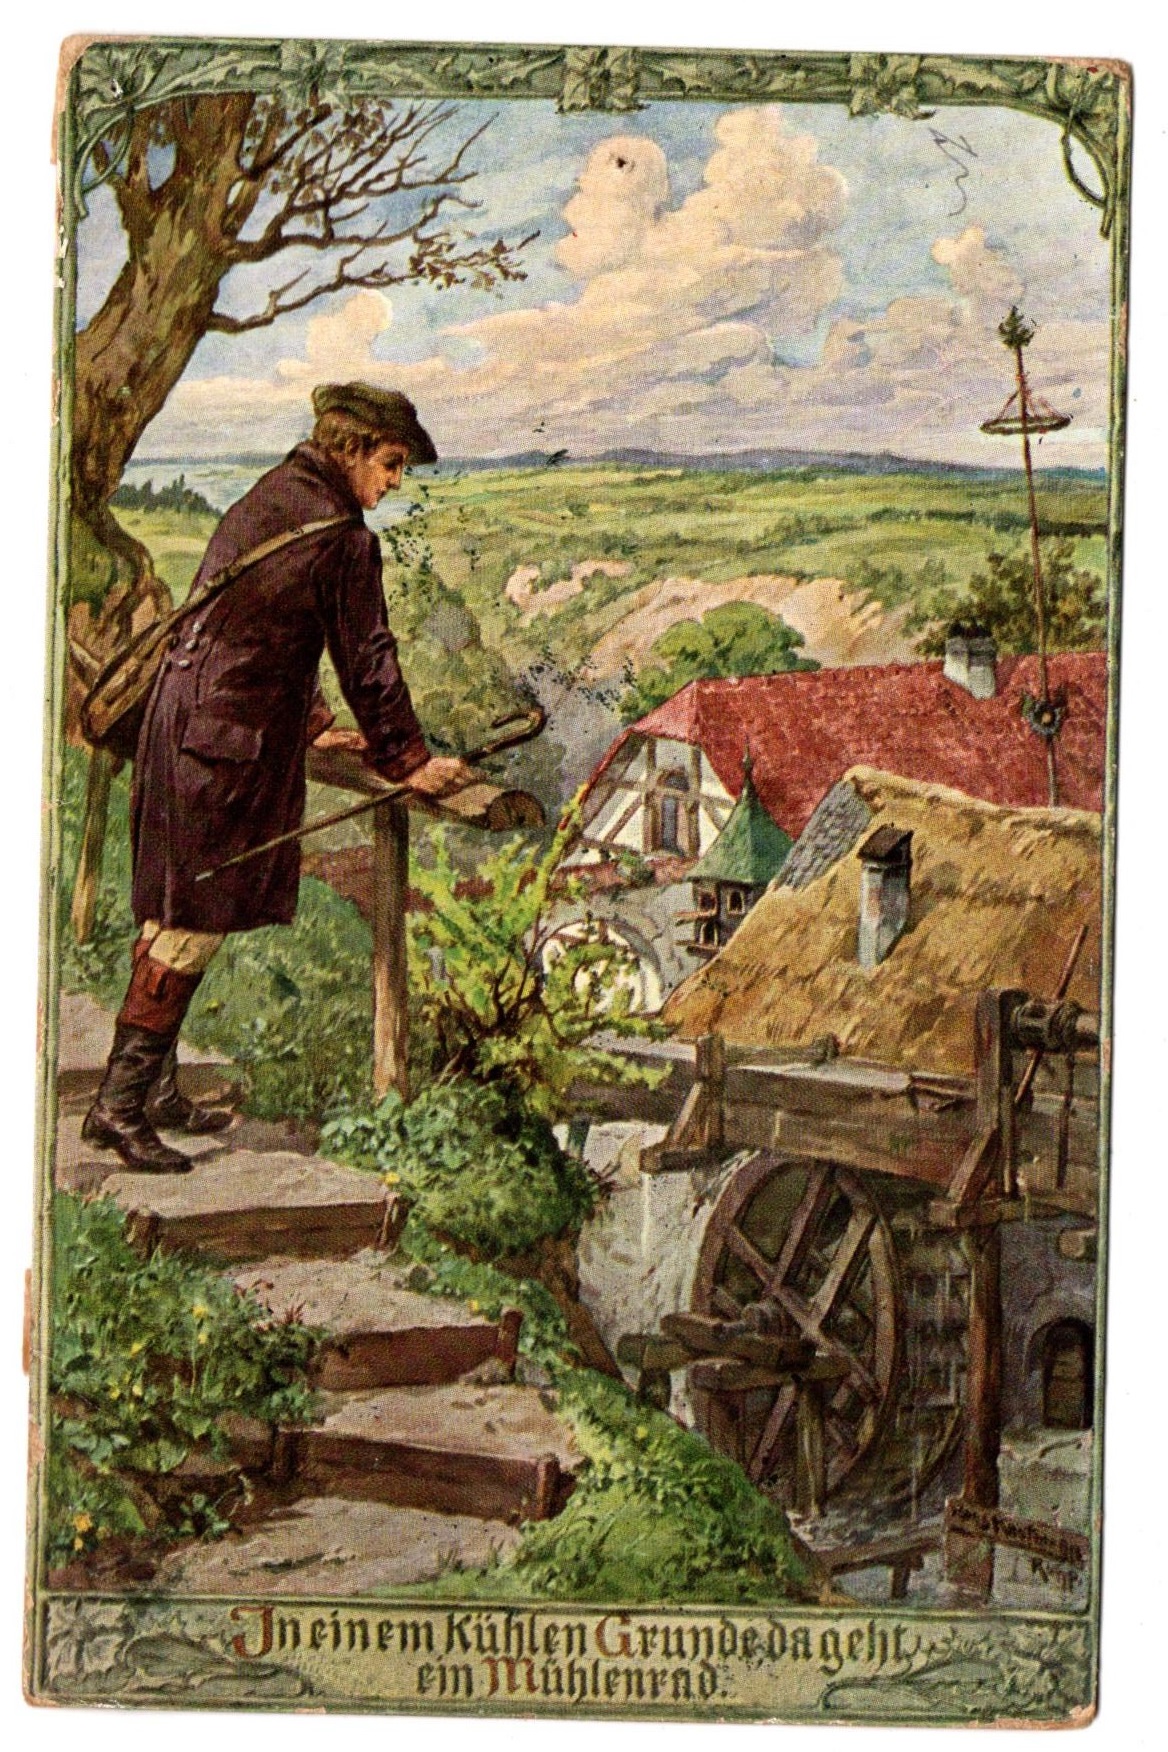 Postkarte "In einem kühlen Grunde da geht ein Mühlenrad"